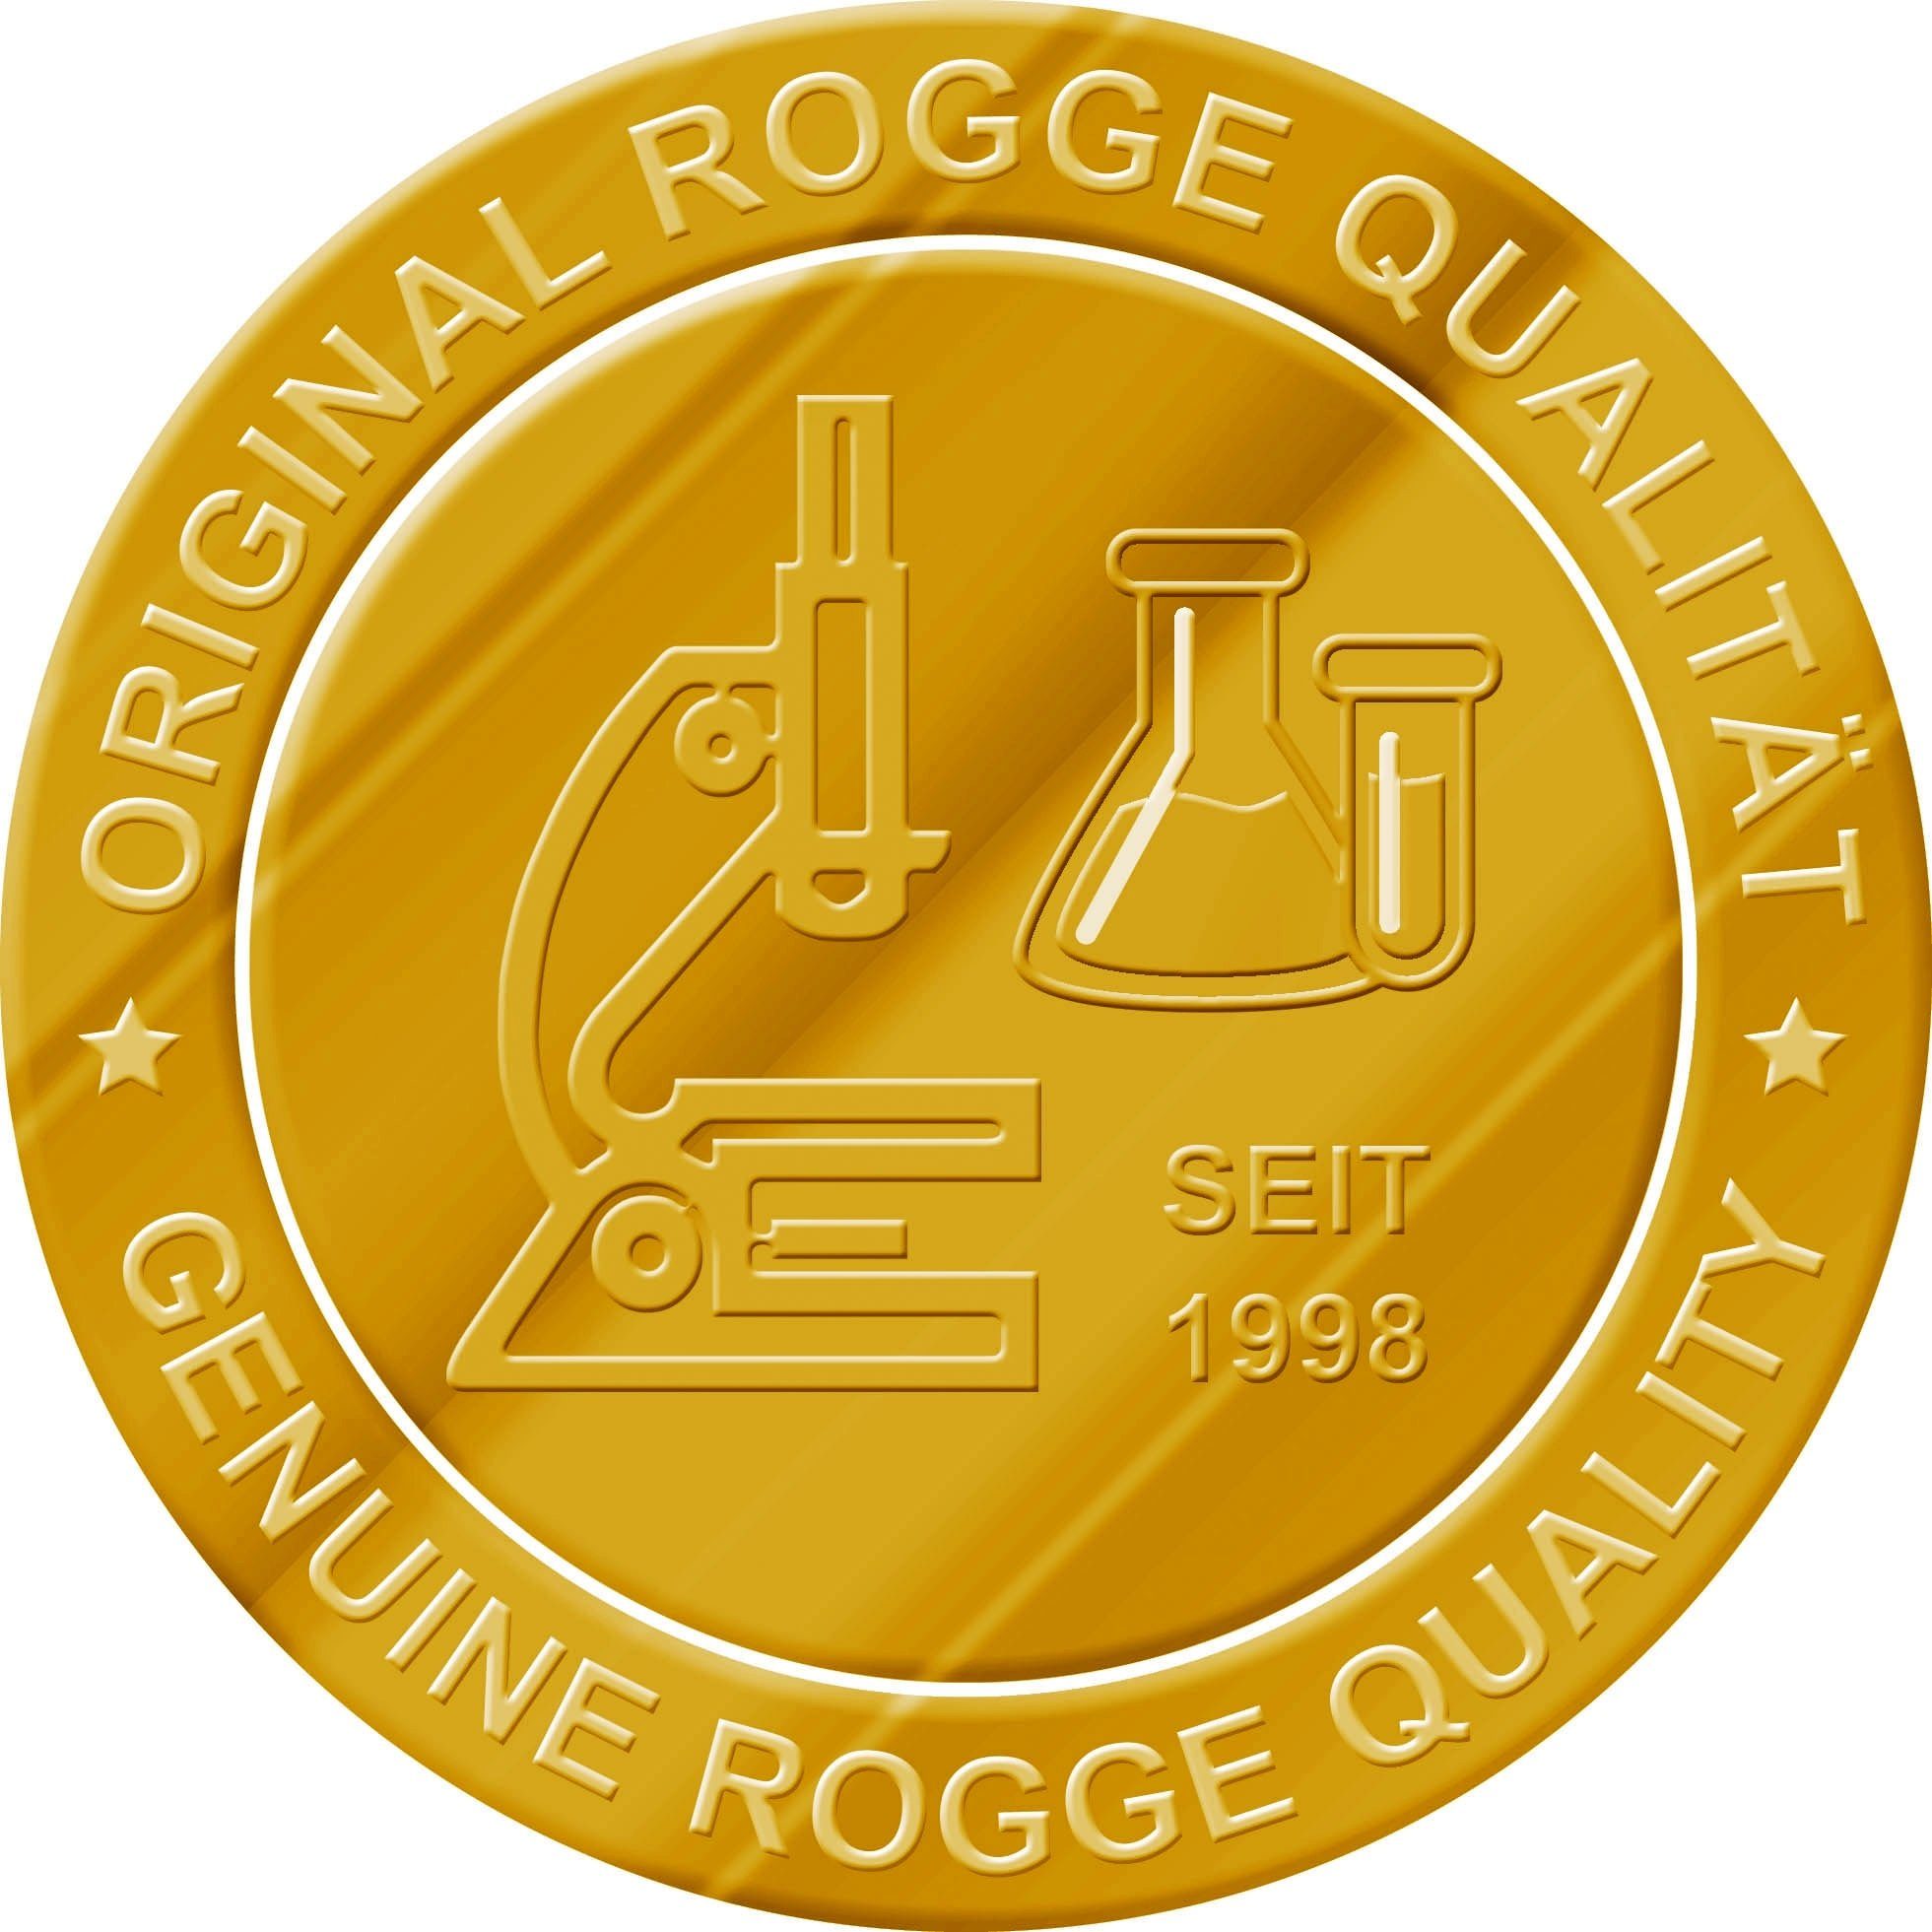 Rogge ROGGE Screen (1-St. Flüssigreiniger Liter Nachfüllflasche 1.000ml - 1 Cleaner Bildschirmreiniger)